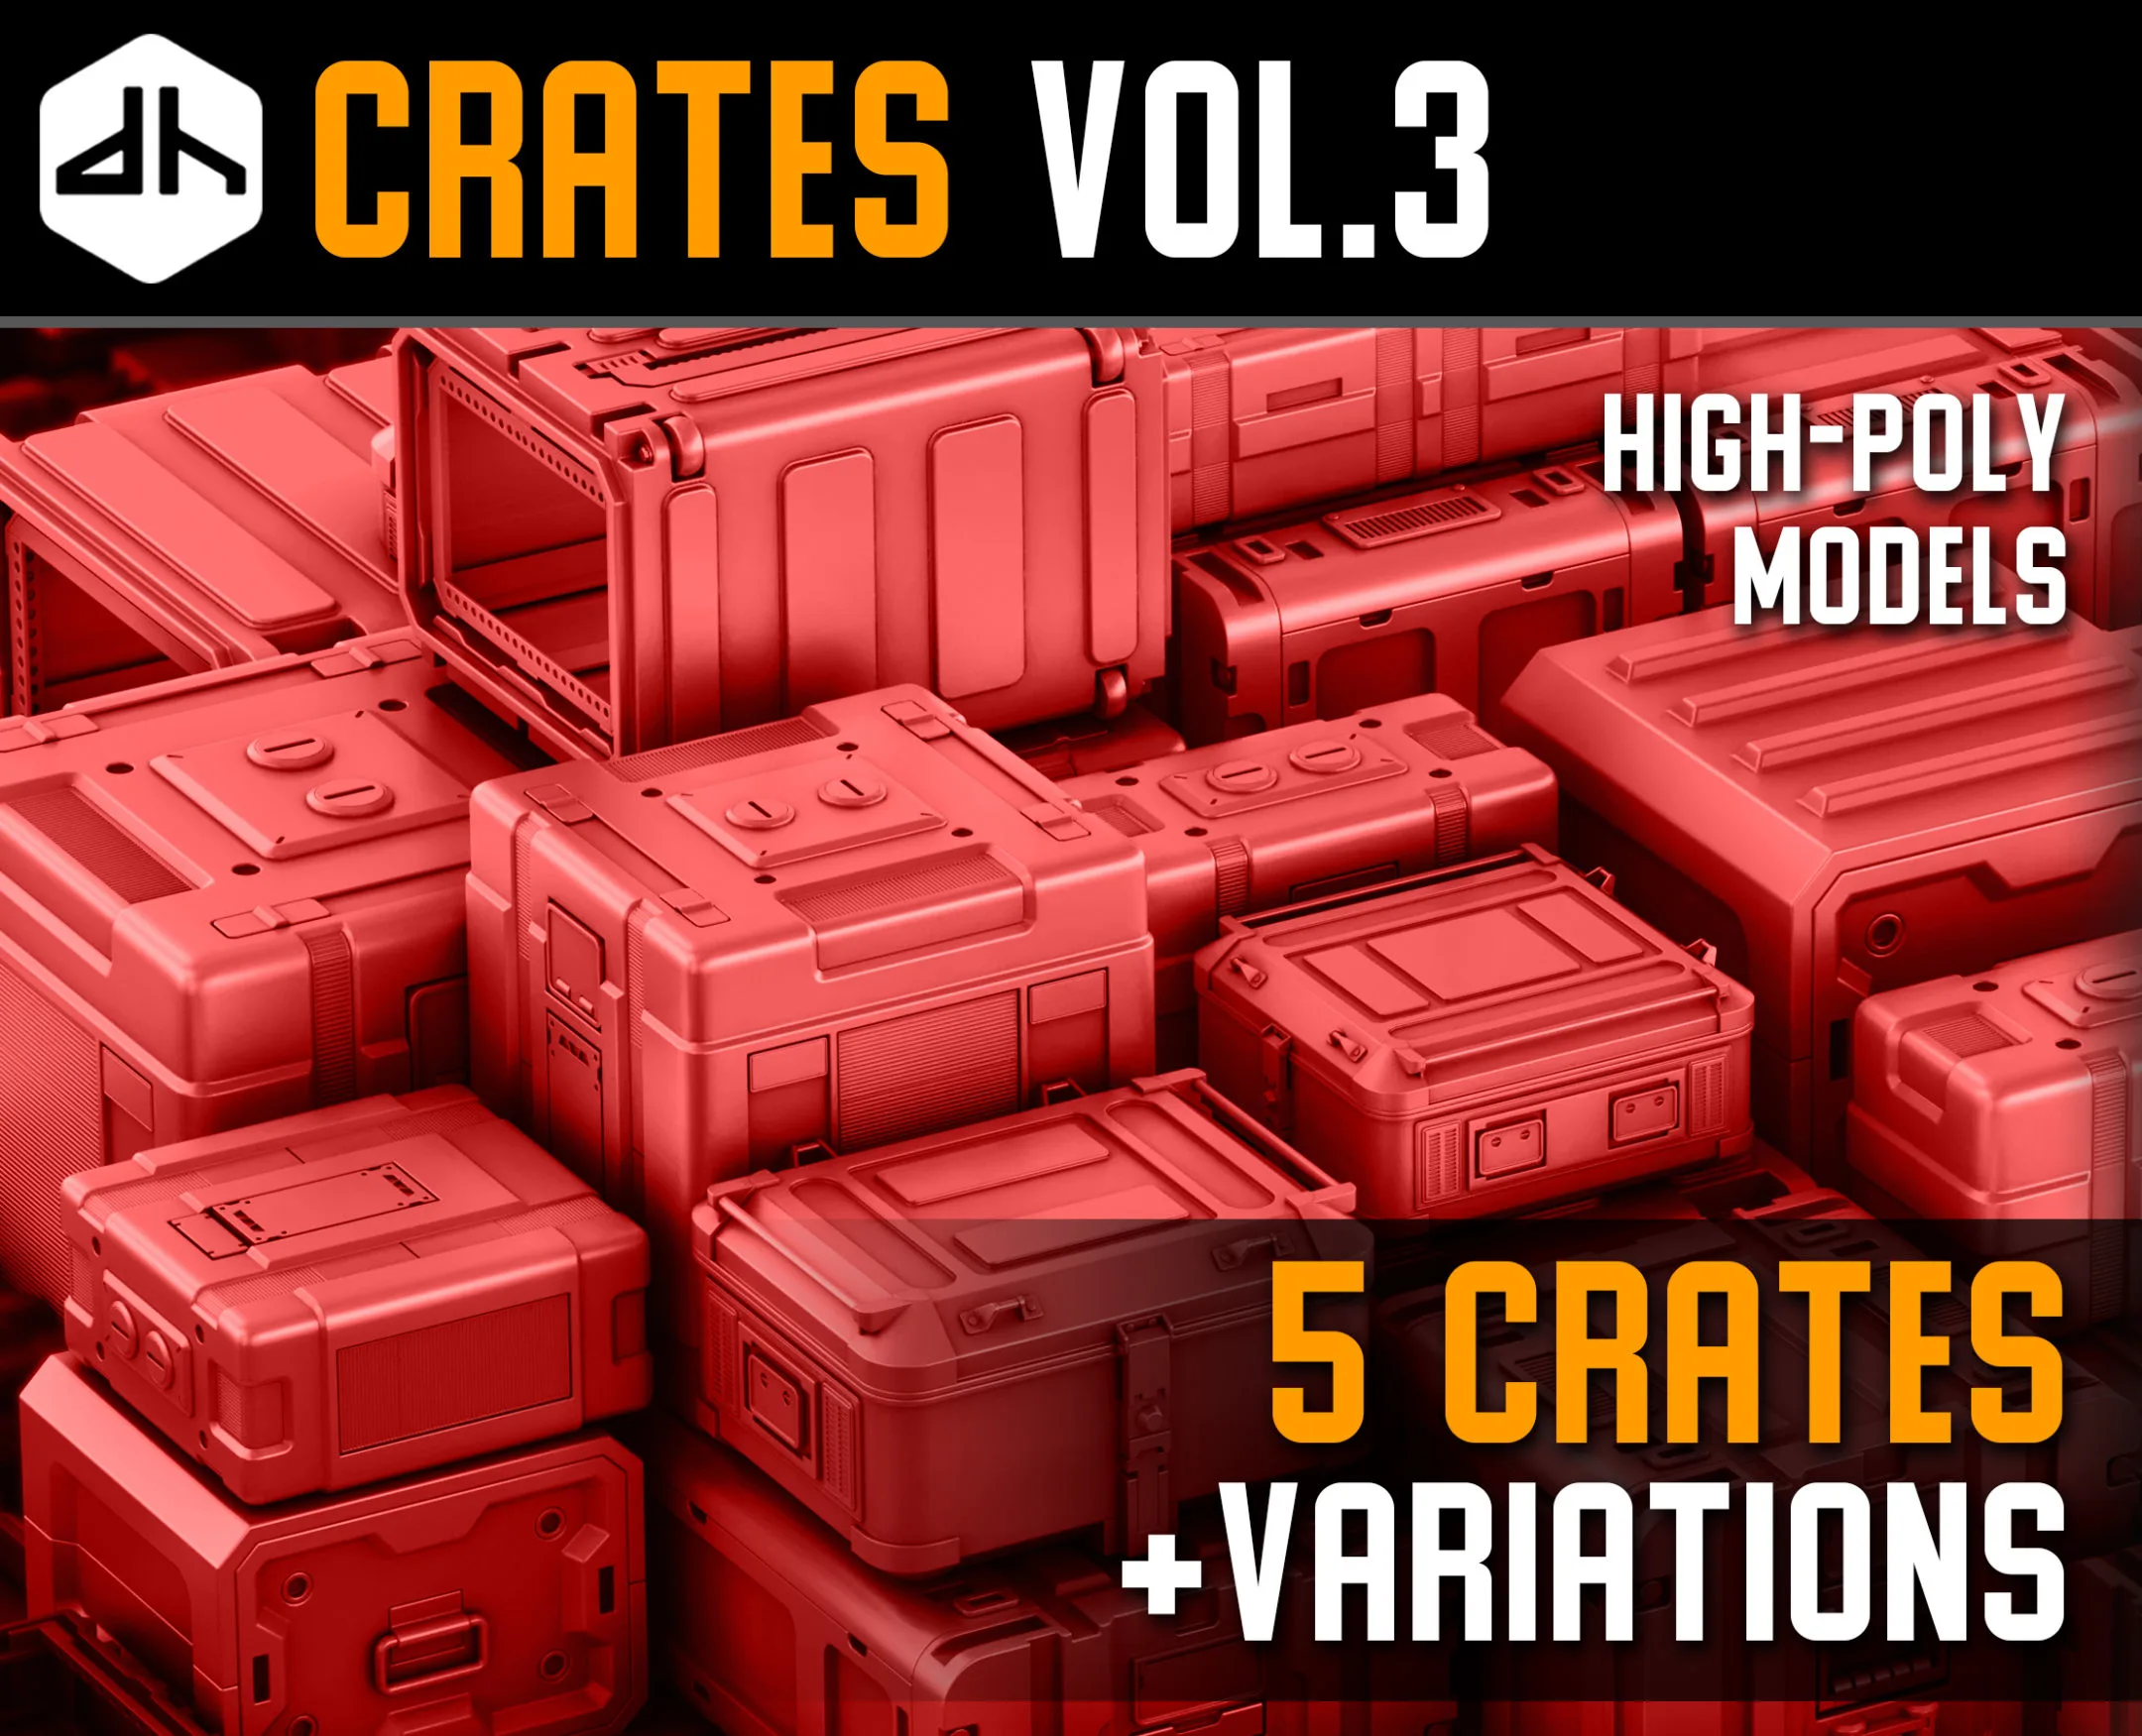 Crates Vol.3